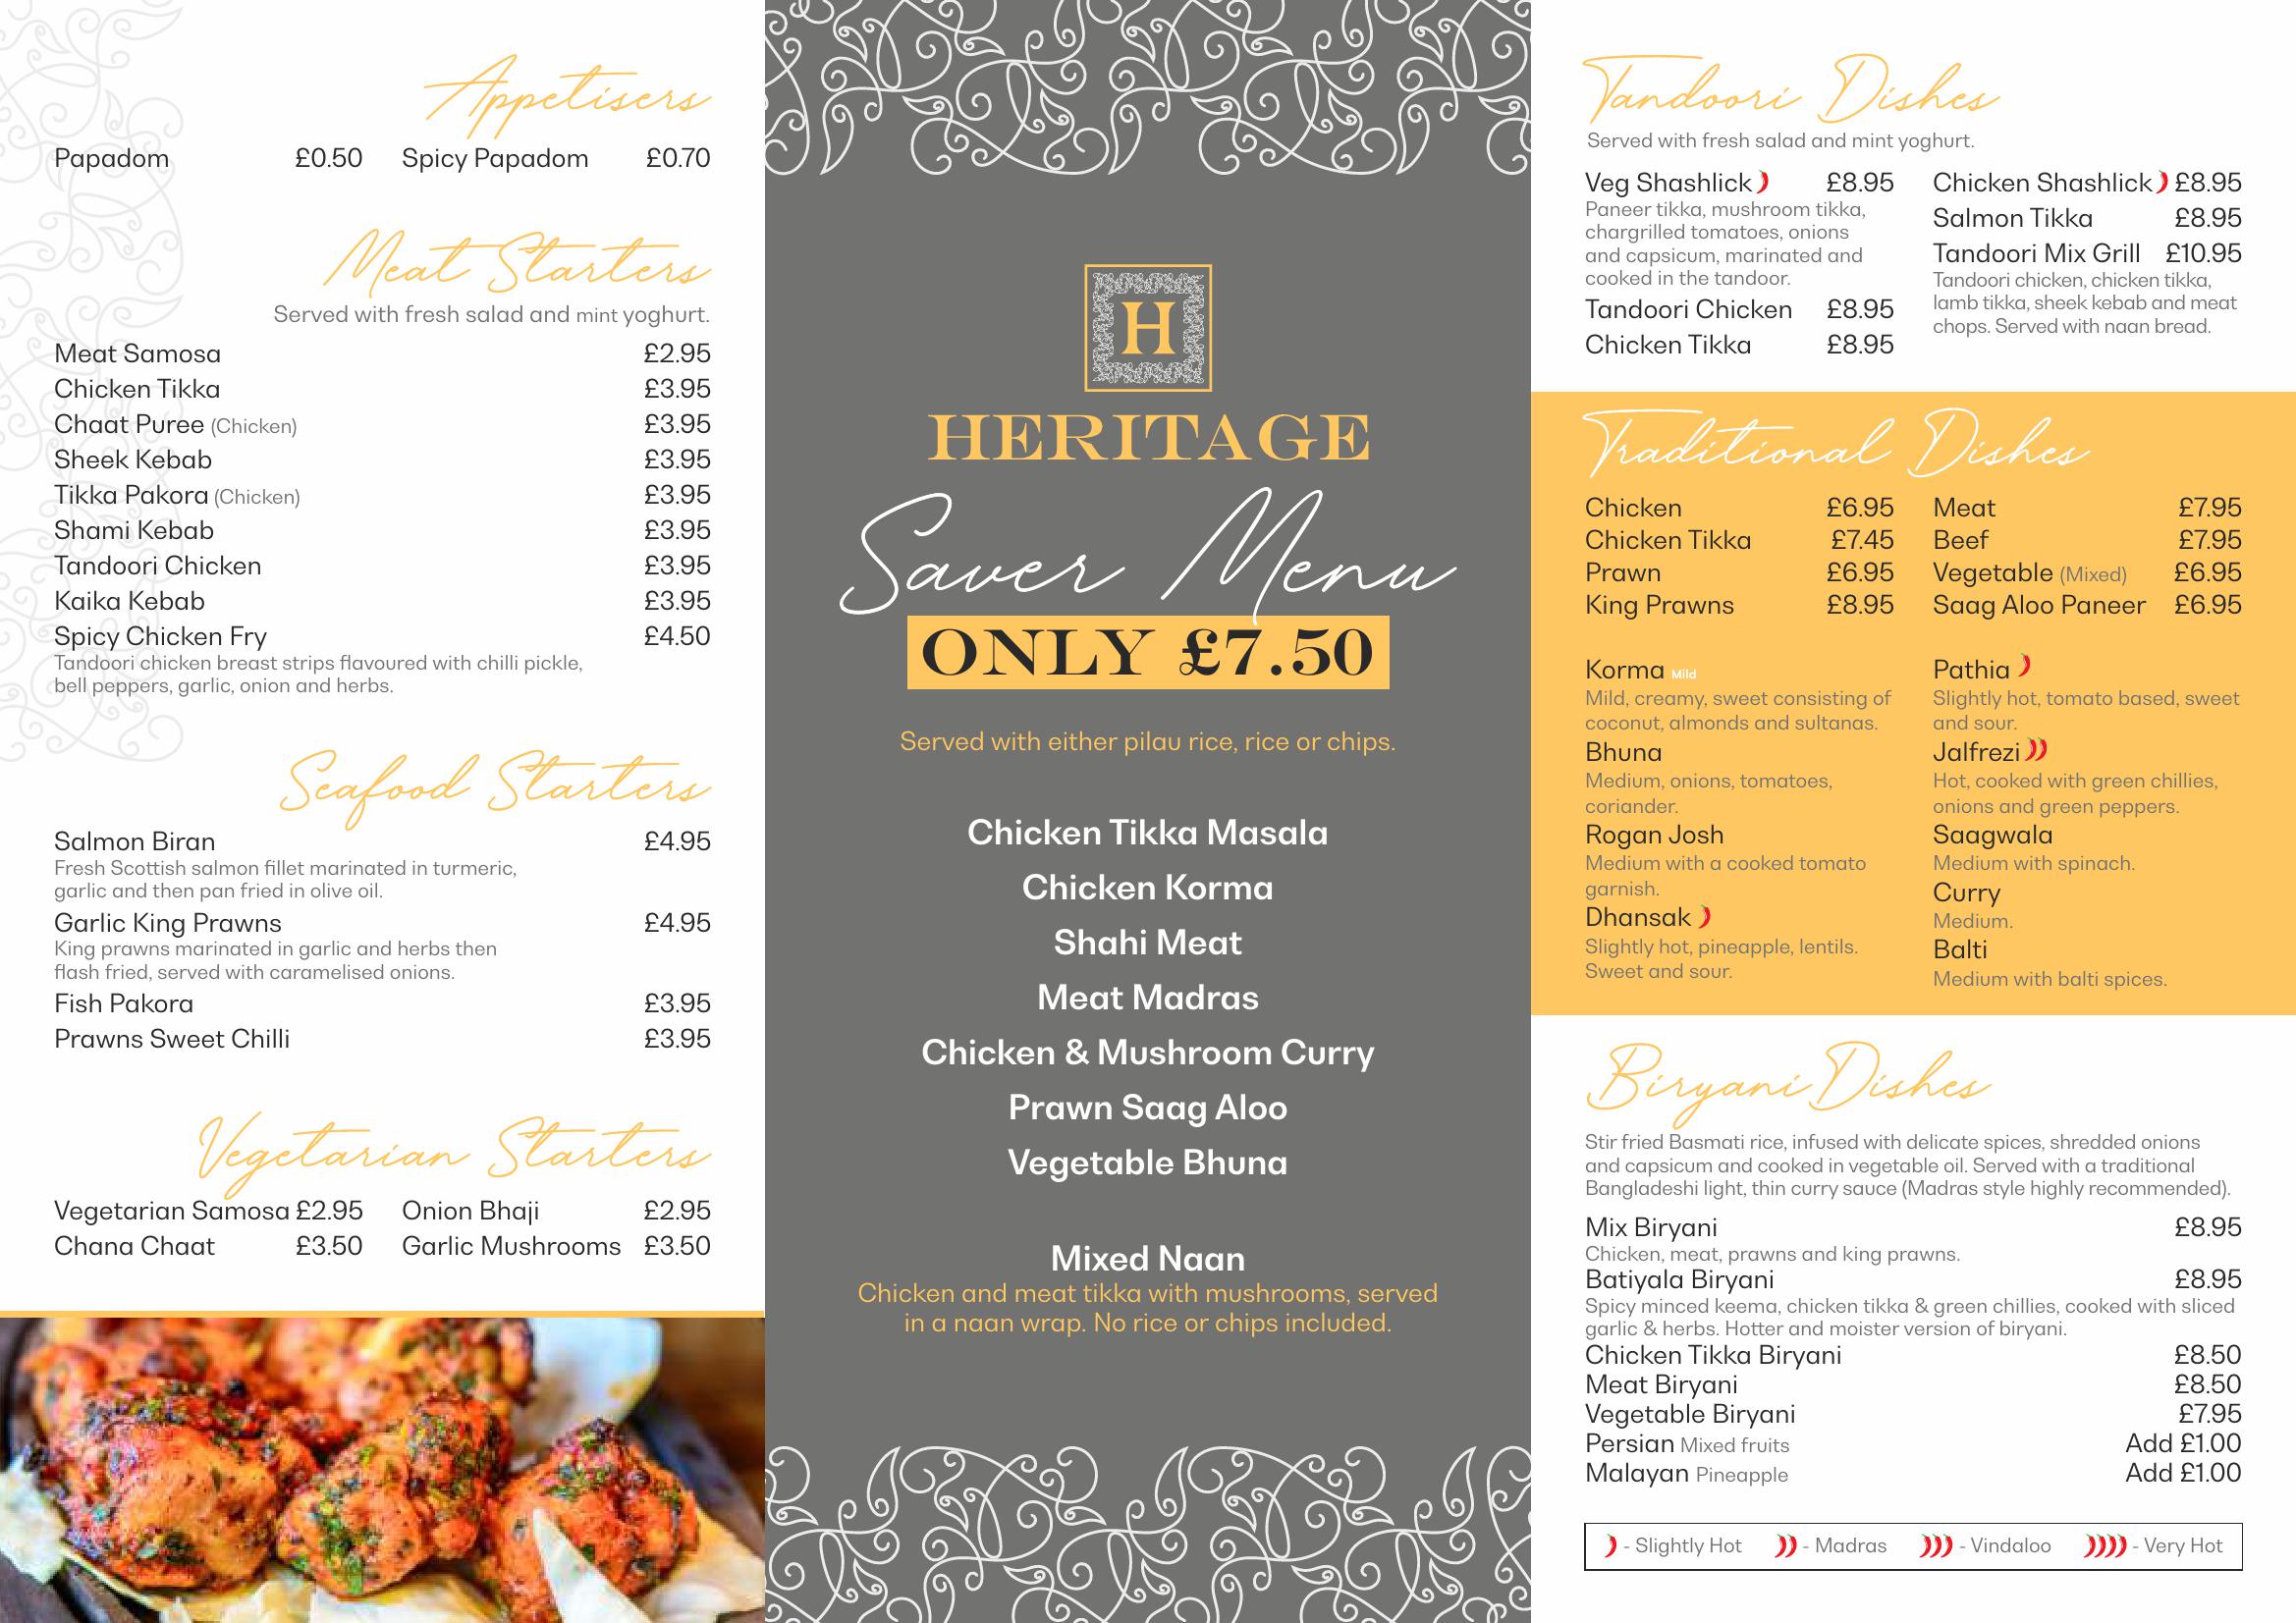 Heritage Indian Restaurant - main menu